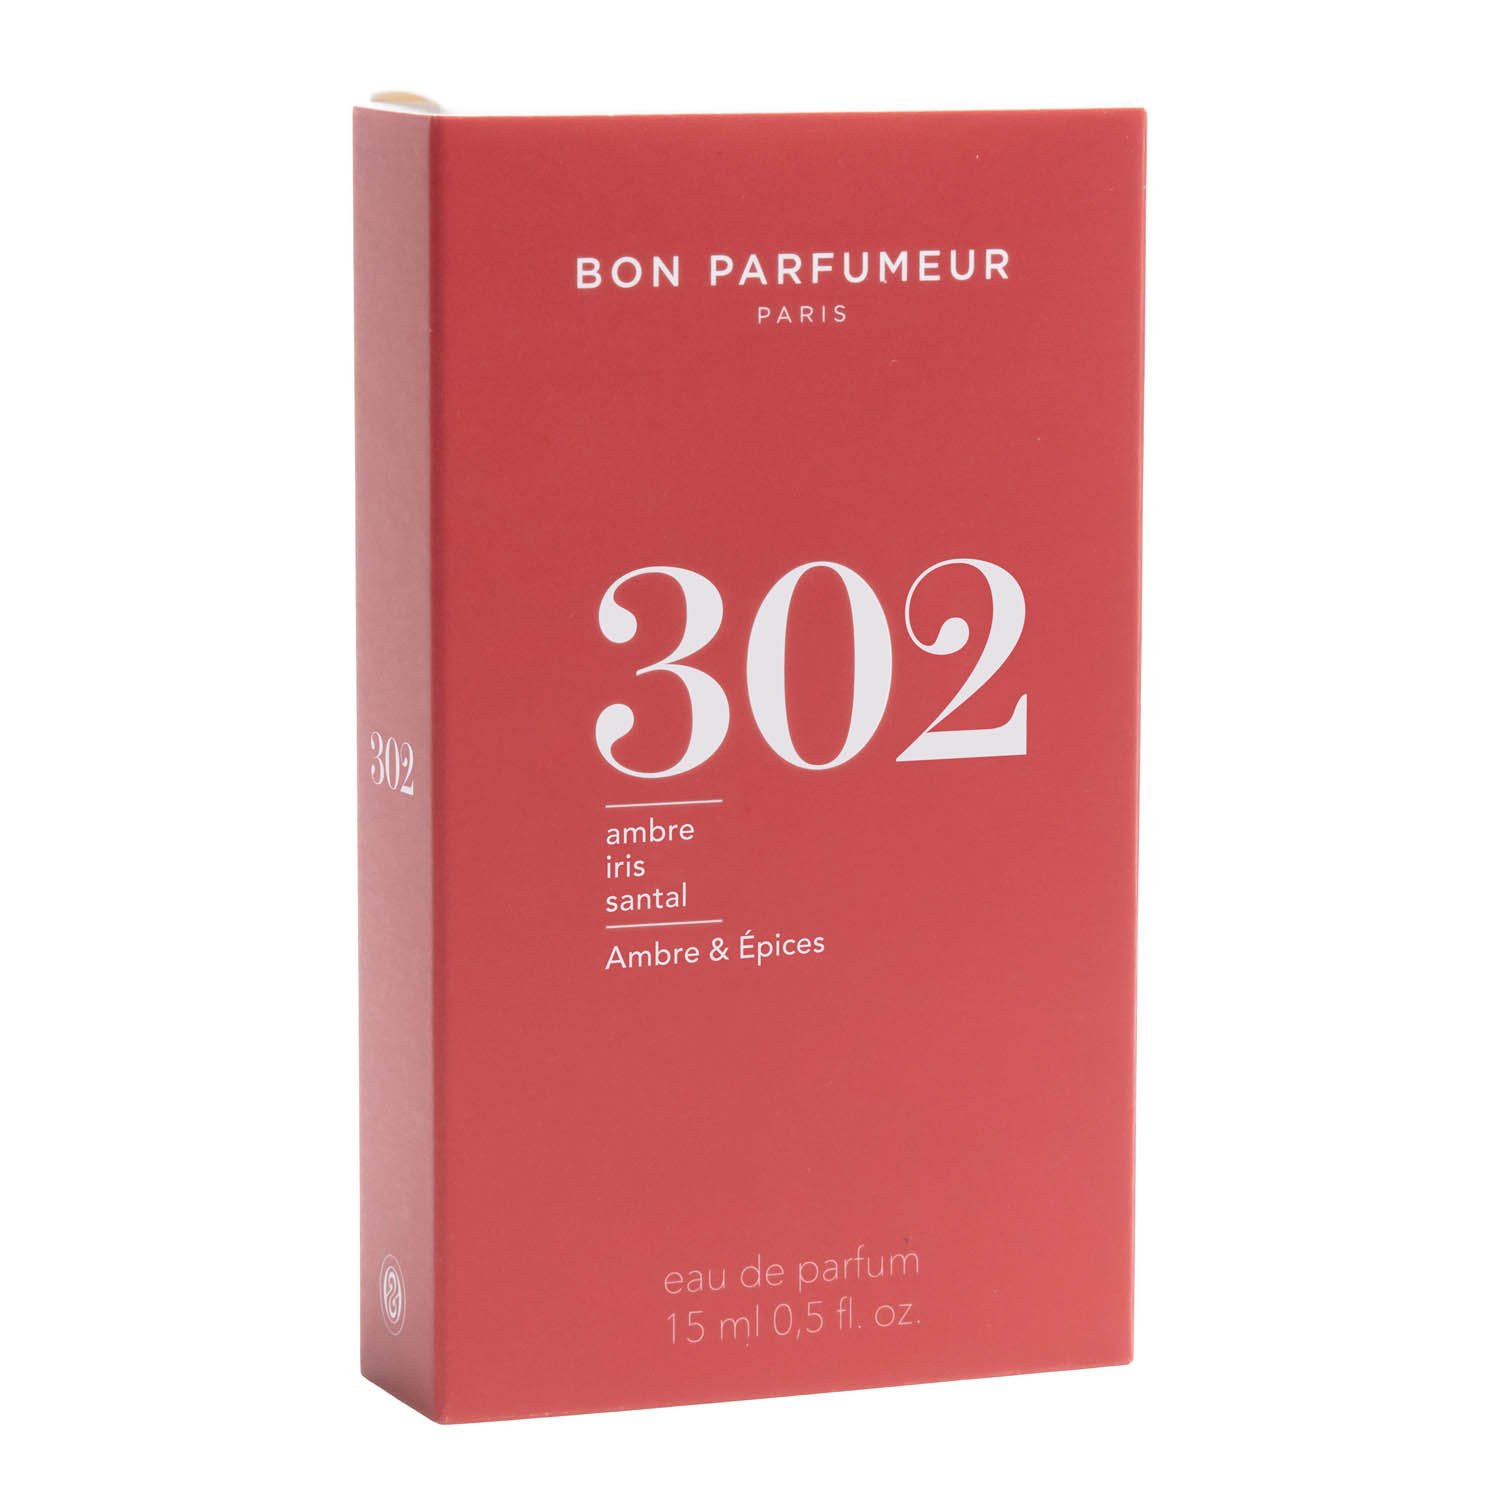 Bon Parfumeur Eau de Parfum 302 15 ml